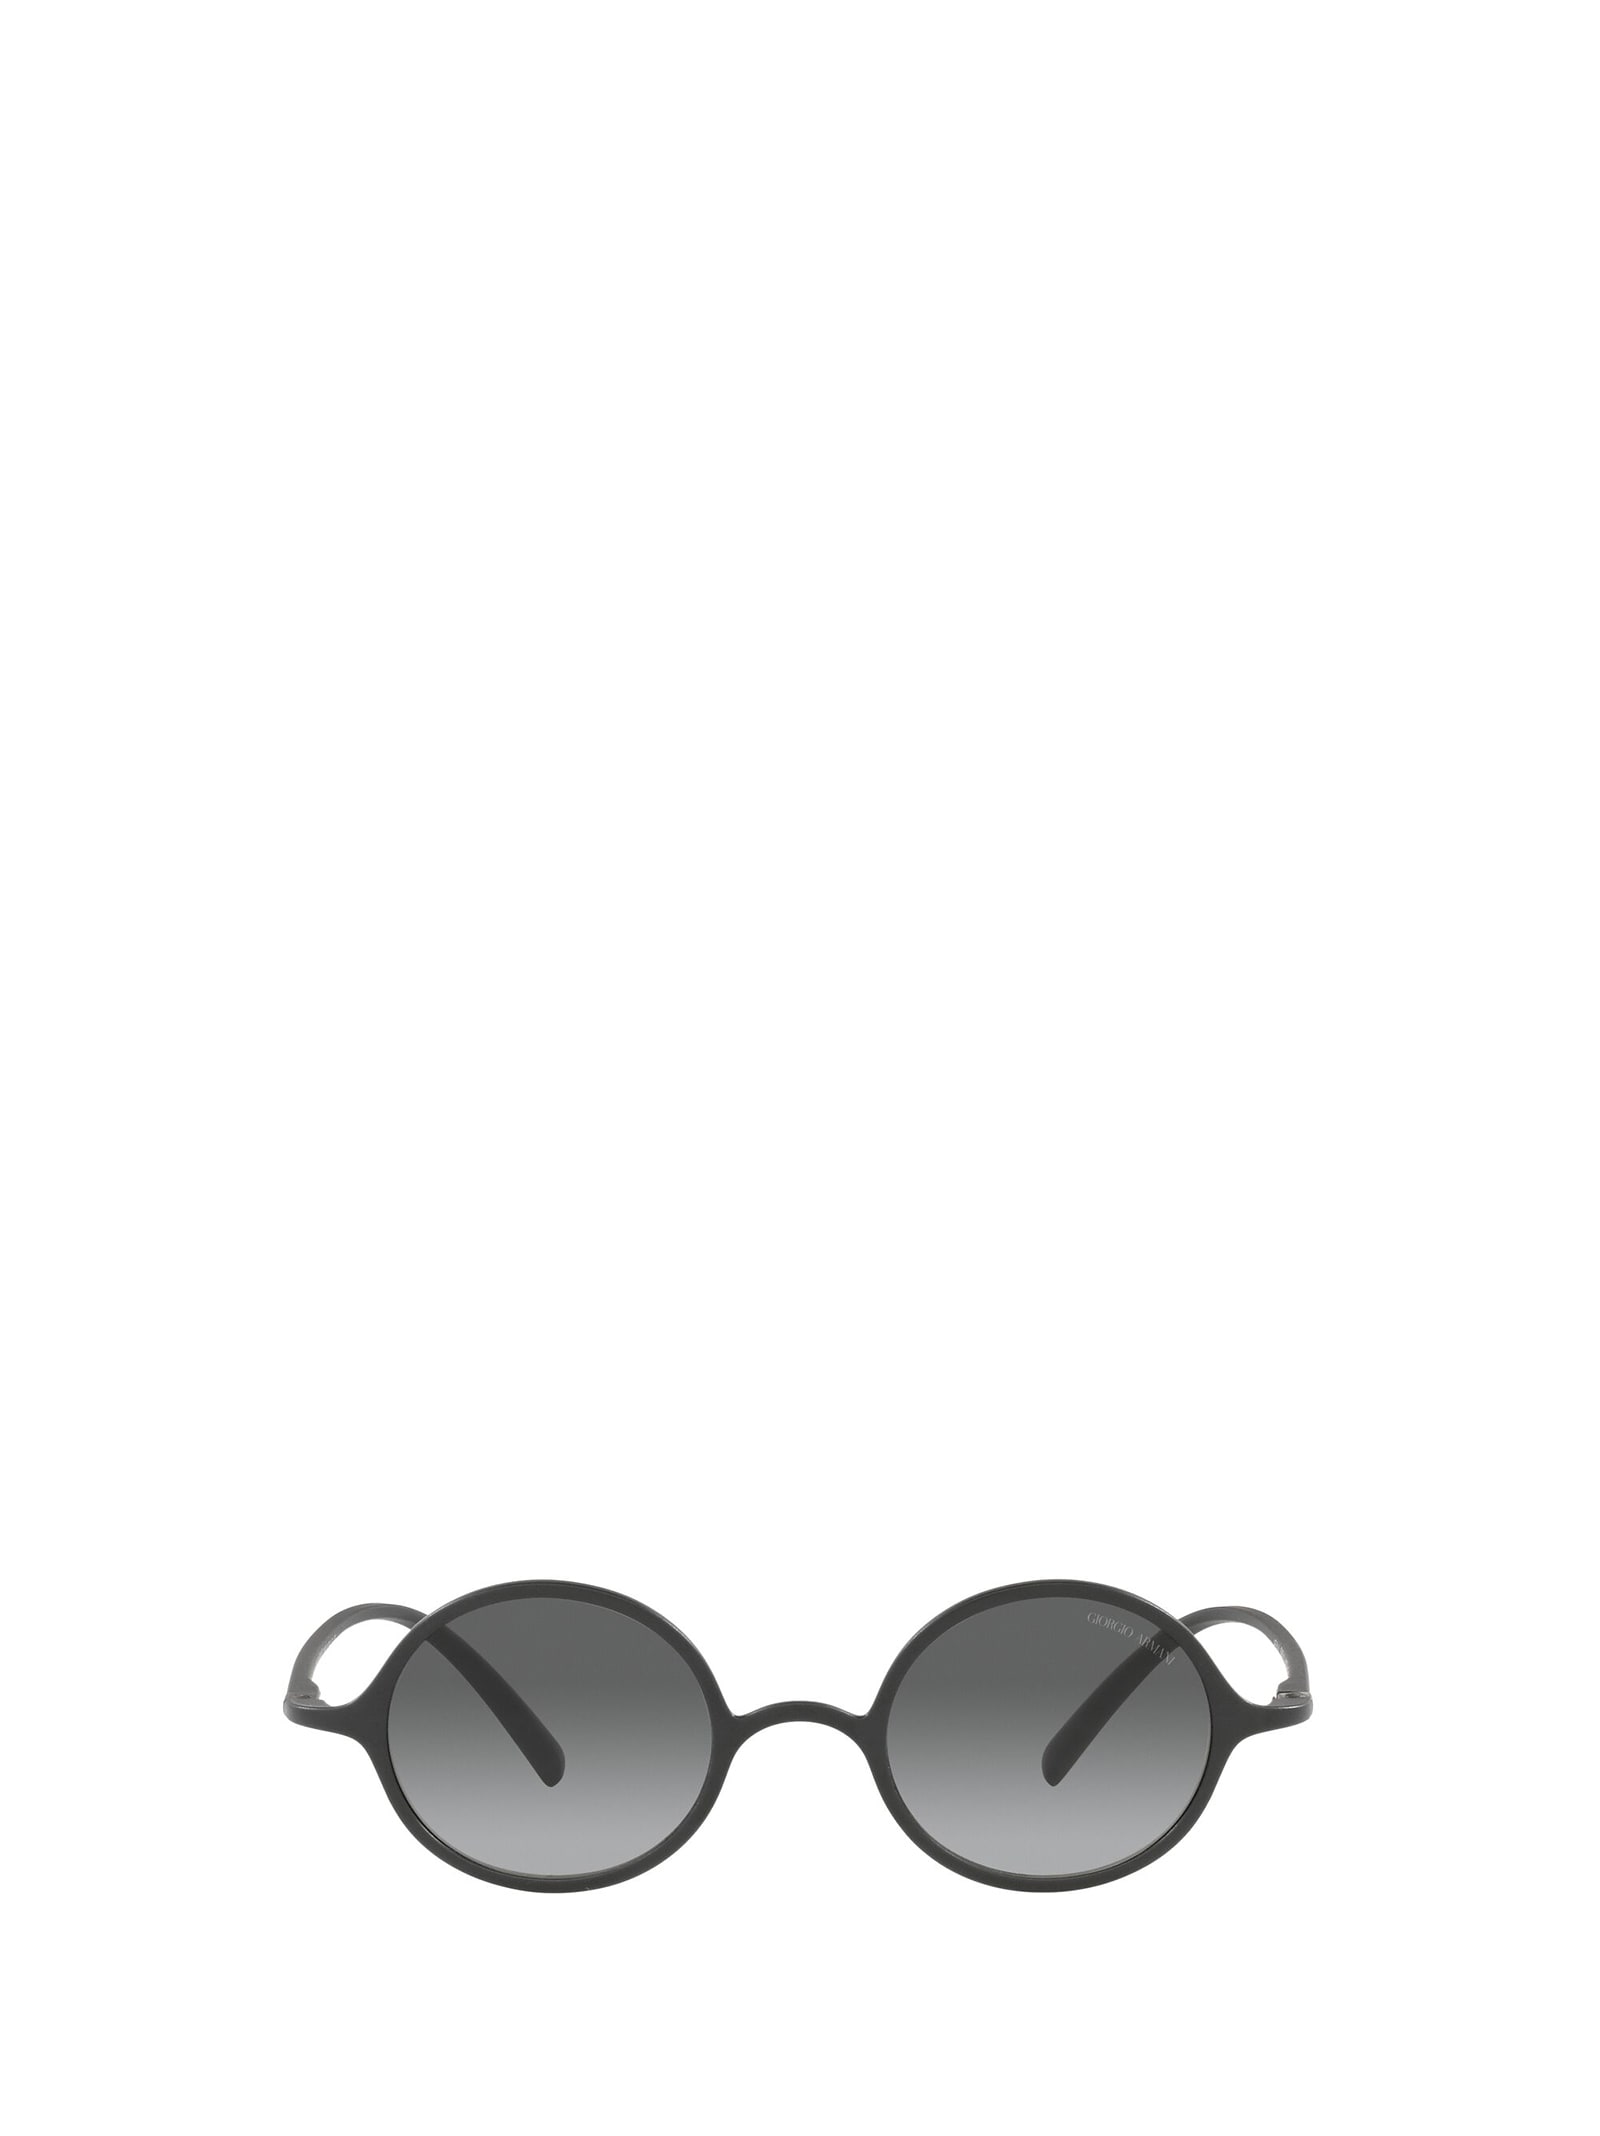 Giorgio Armani Giorgio Armani Ar8141 Matte Grey Sunglasses